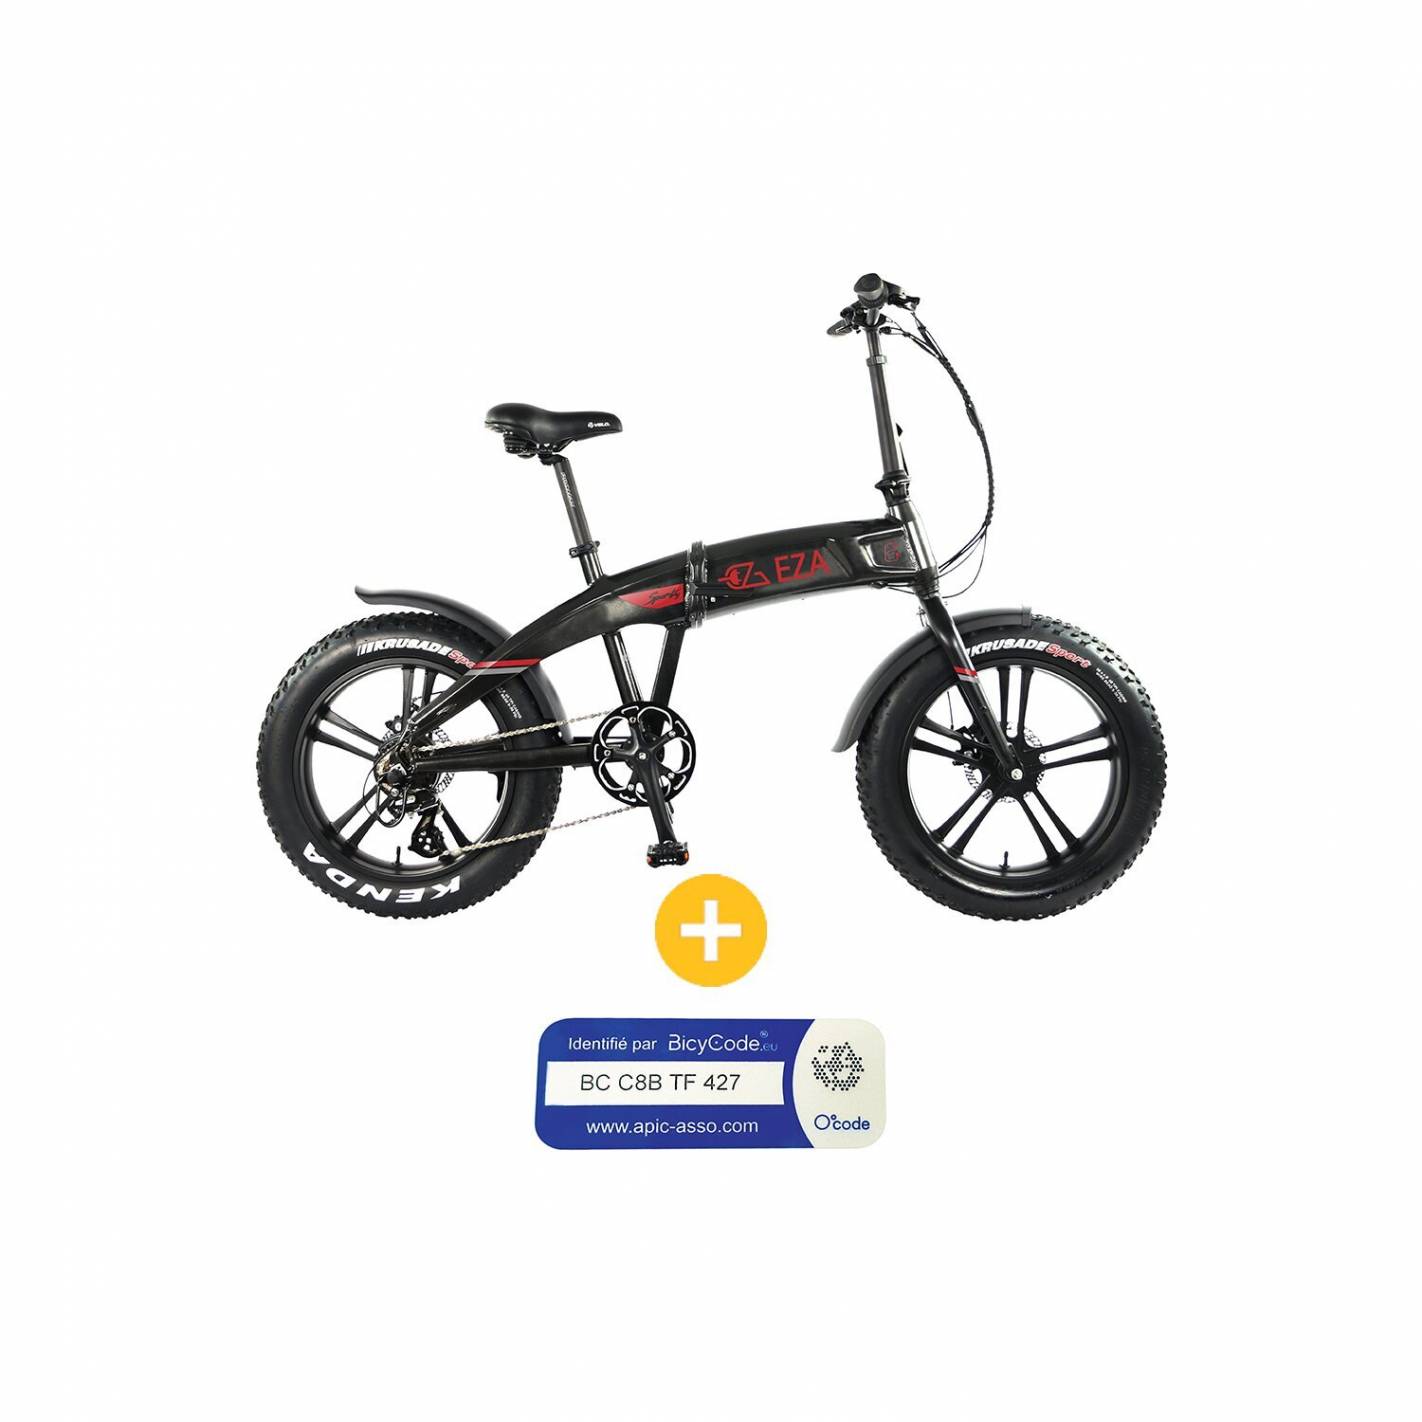 Acheter Kit Fat Bike 250W roue arrière 20 - 24 ou 26 sans batterie